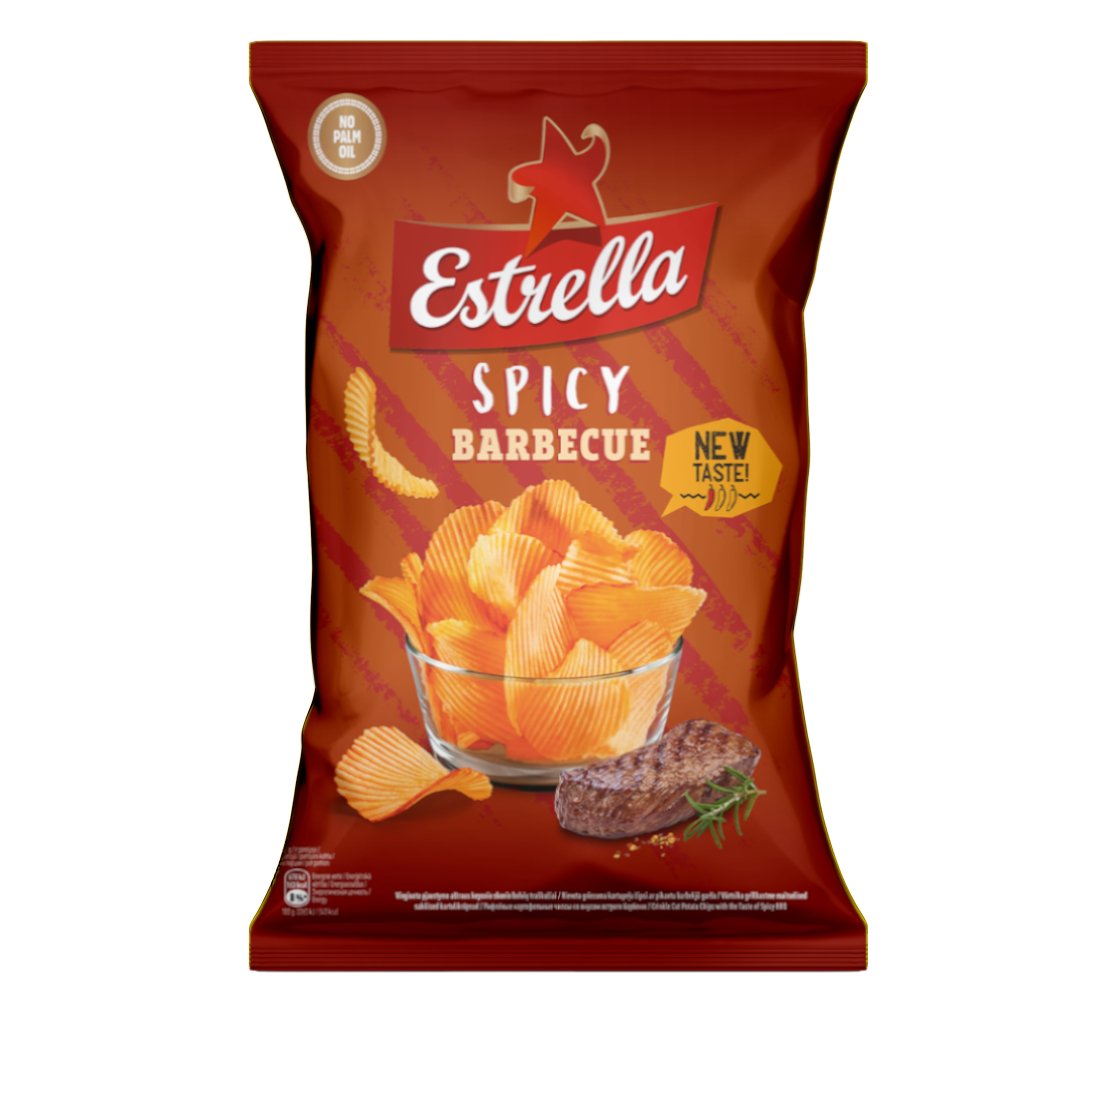 Estrella Spicy Barbeque Crisps (EU) 110g - Candy Mail UK